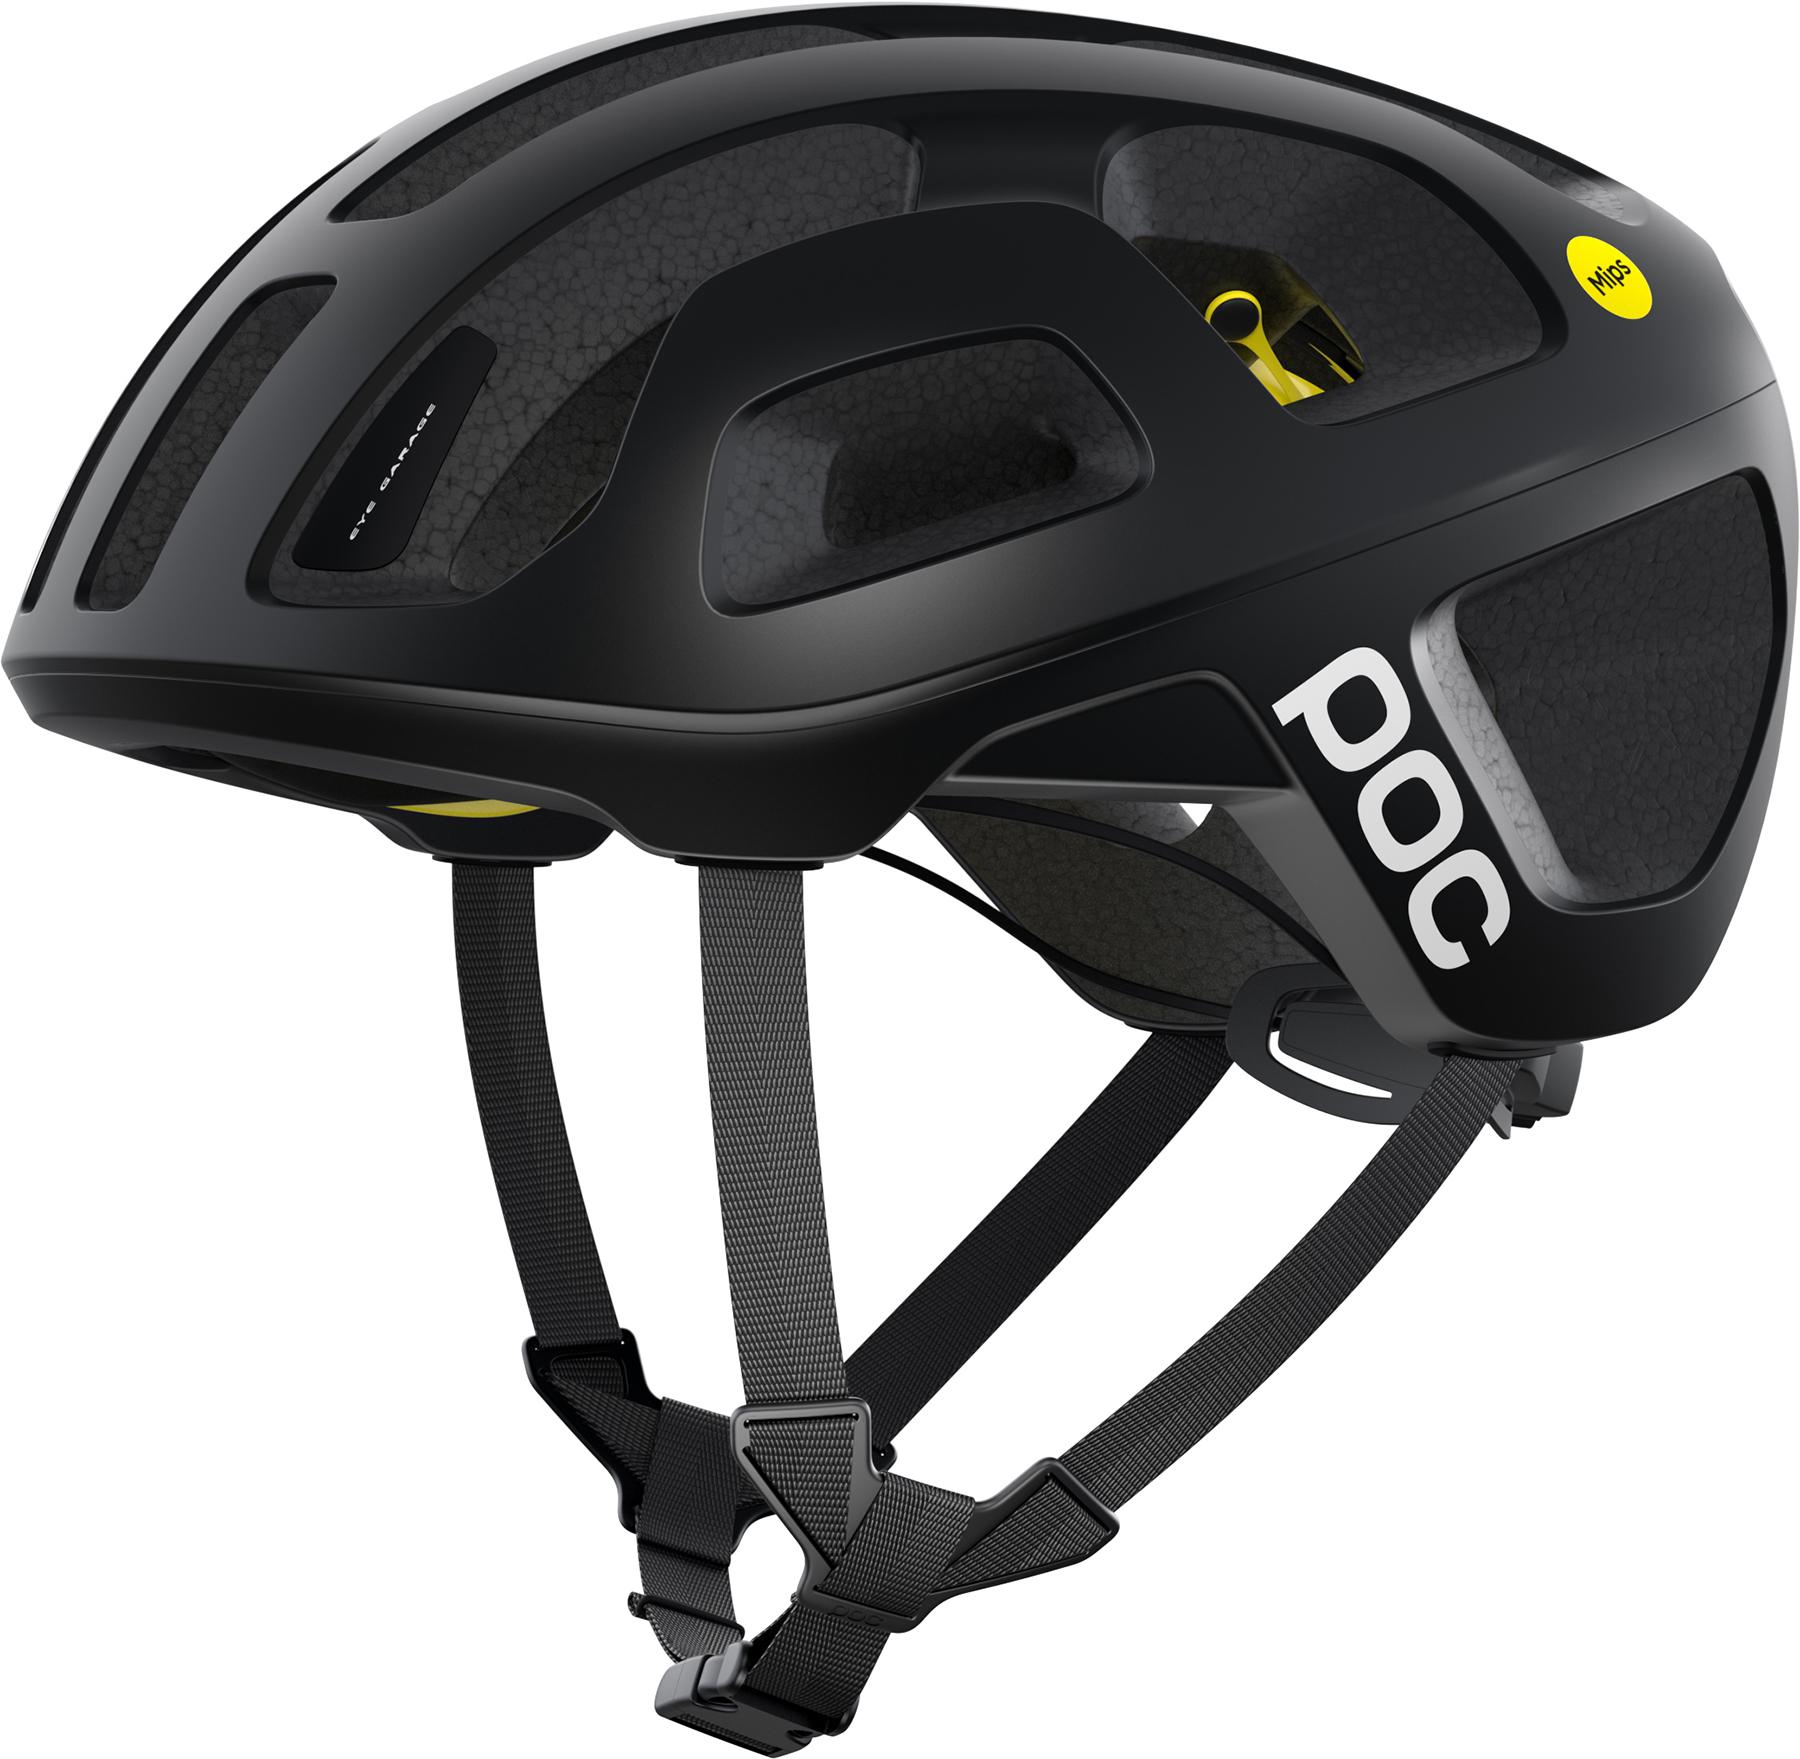 Poc Octal Mips Road Cycling Helmet  Uranium Black Matt